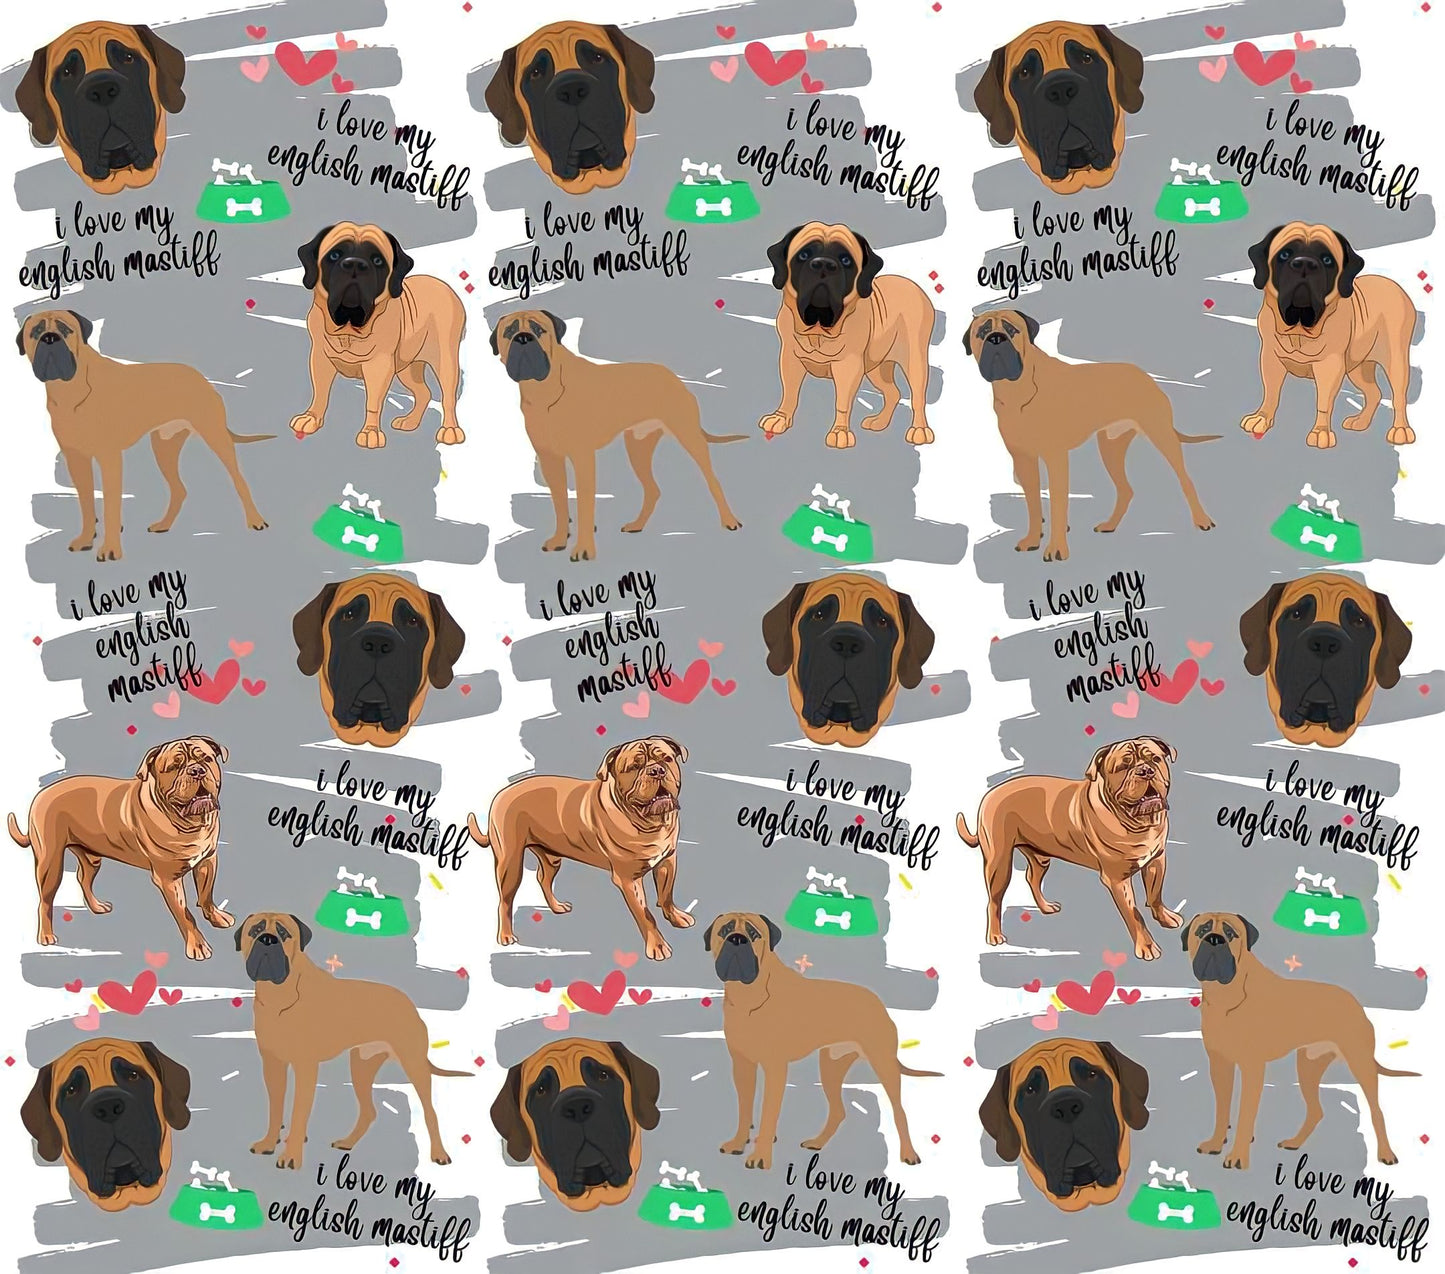 English Mastiff Appreciation - Cartoon - "I Love My English Mastiff" - Assorted Colored Dogs w/ Grey Background - 20 Oz Sublimation Transfer